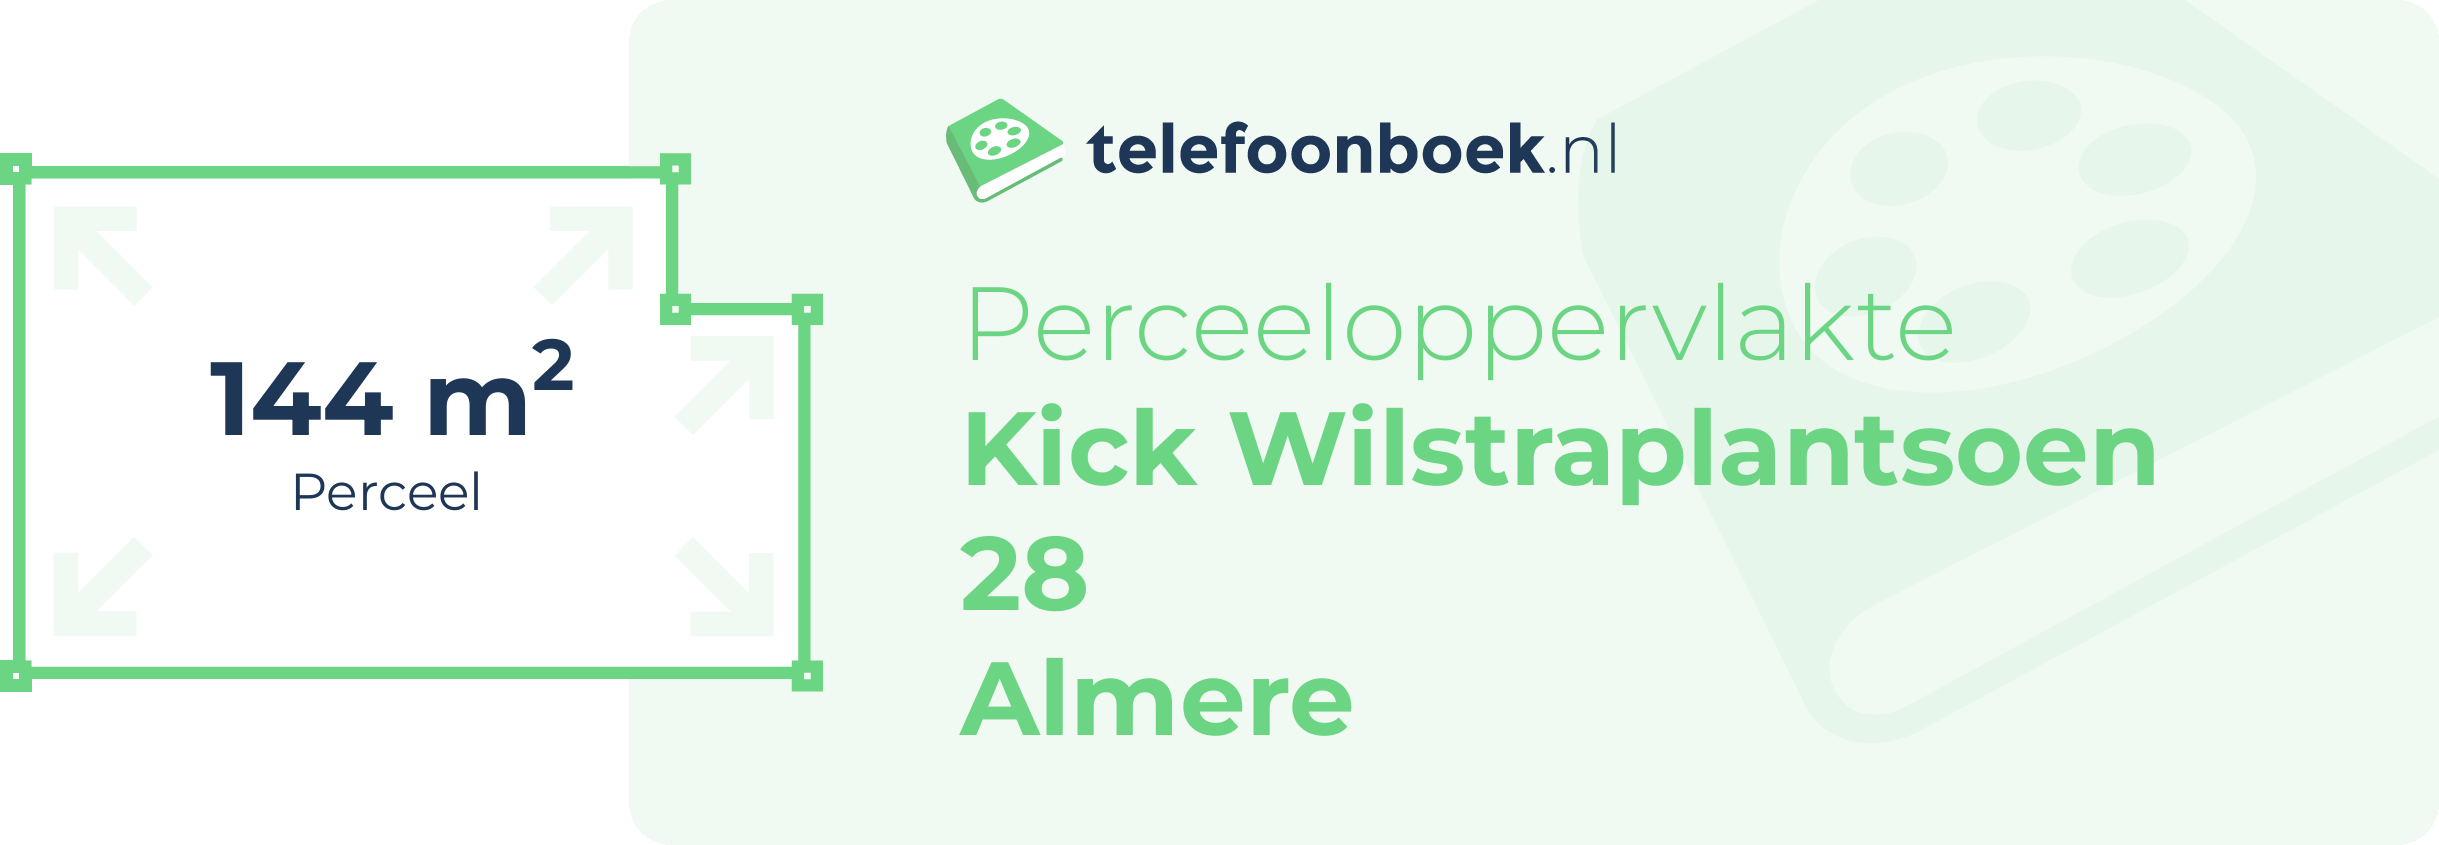 Perceeloppervlakte Kick Wilstraplantsoen 28 Almere